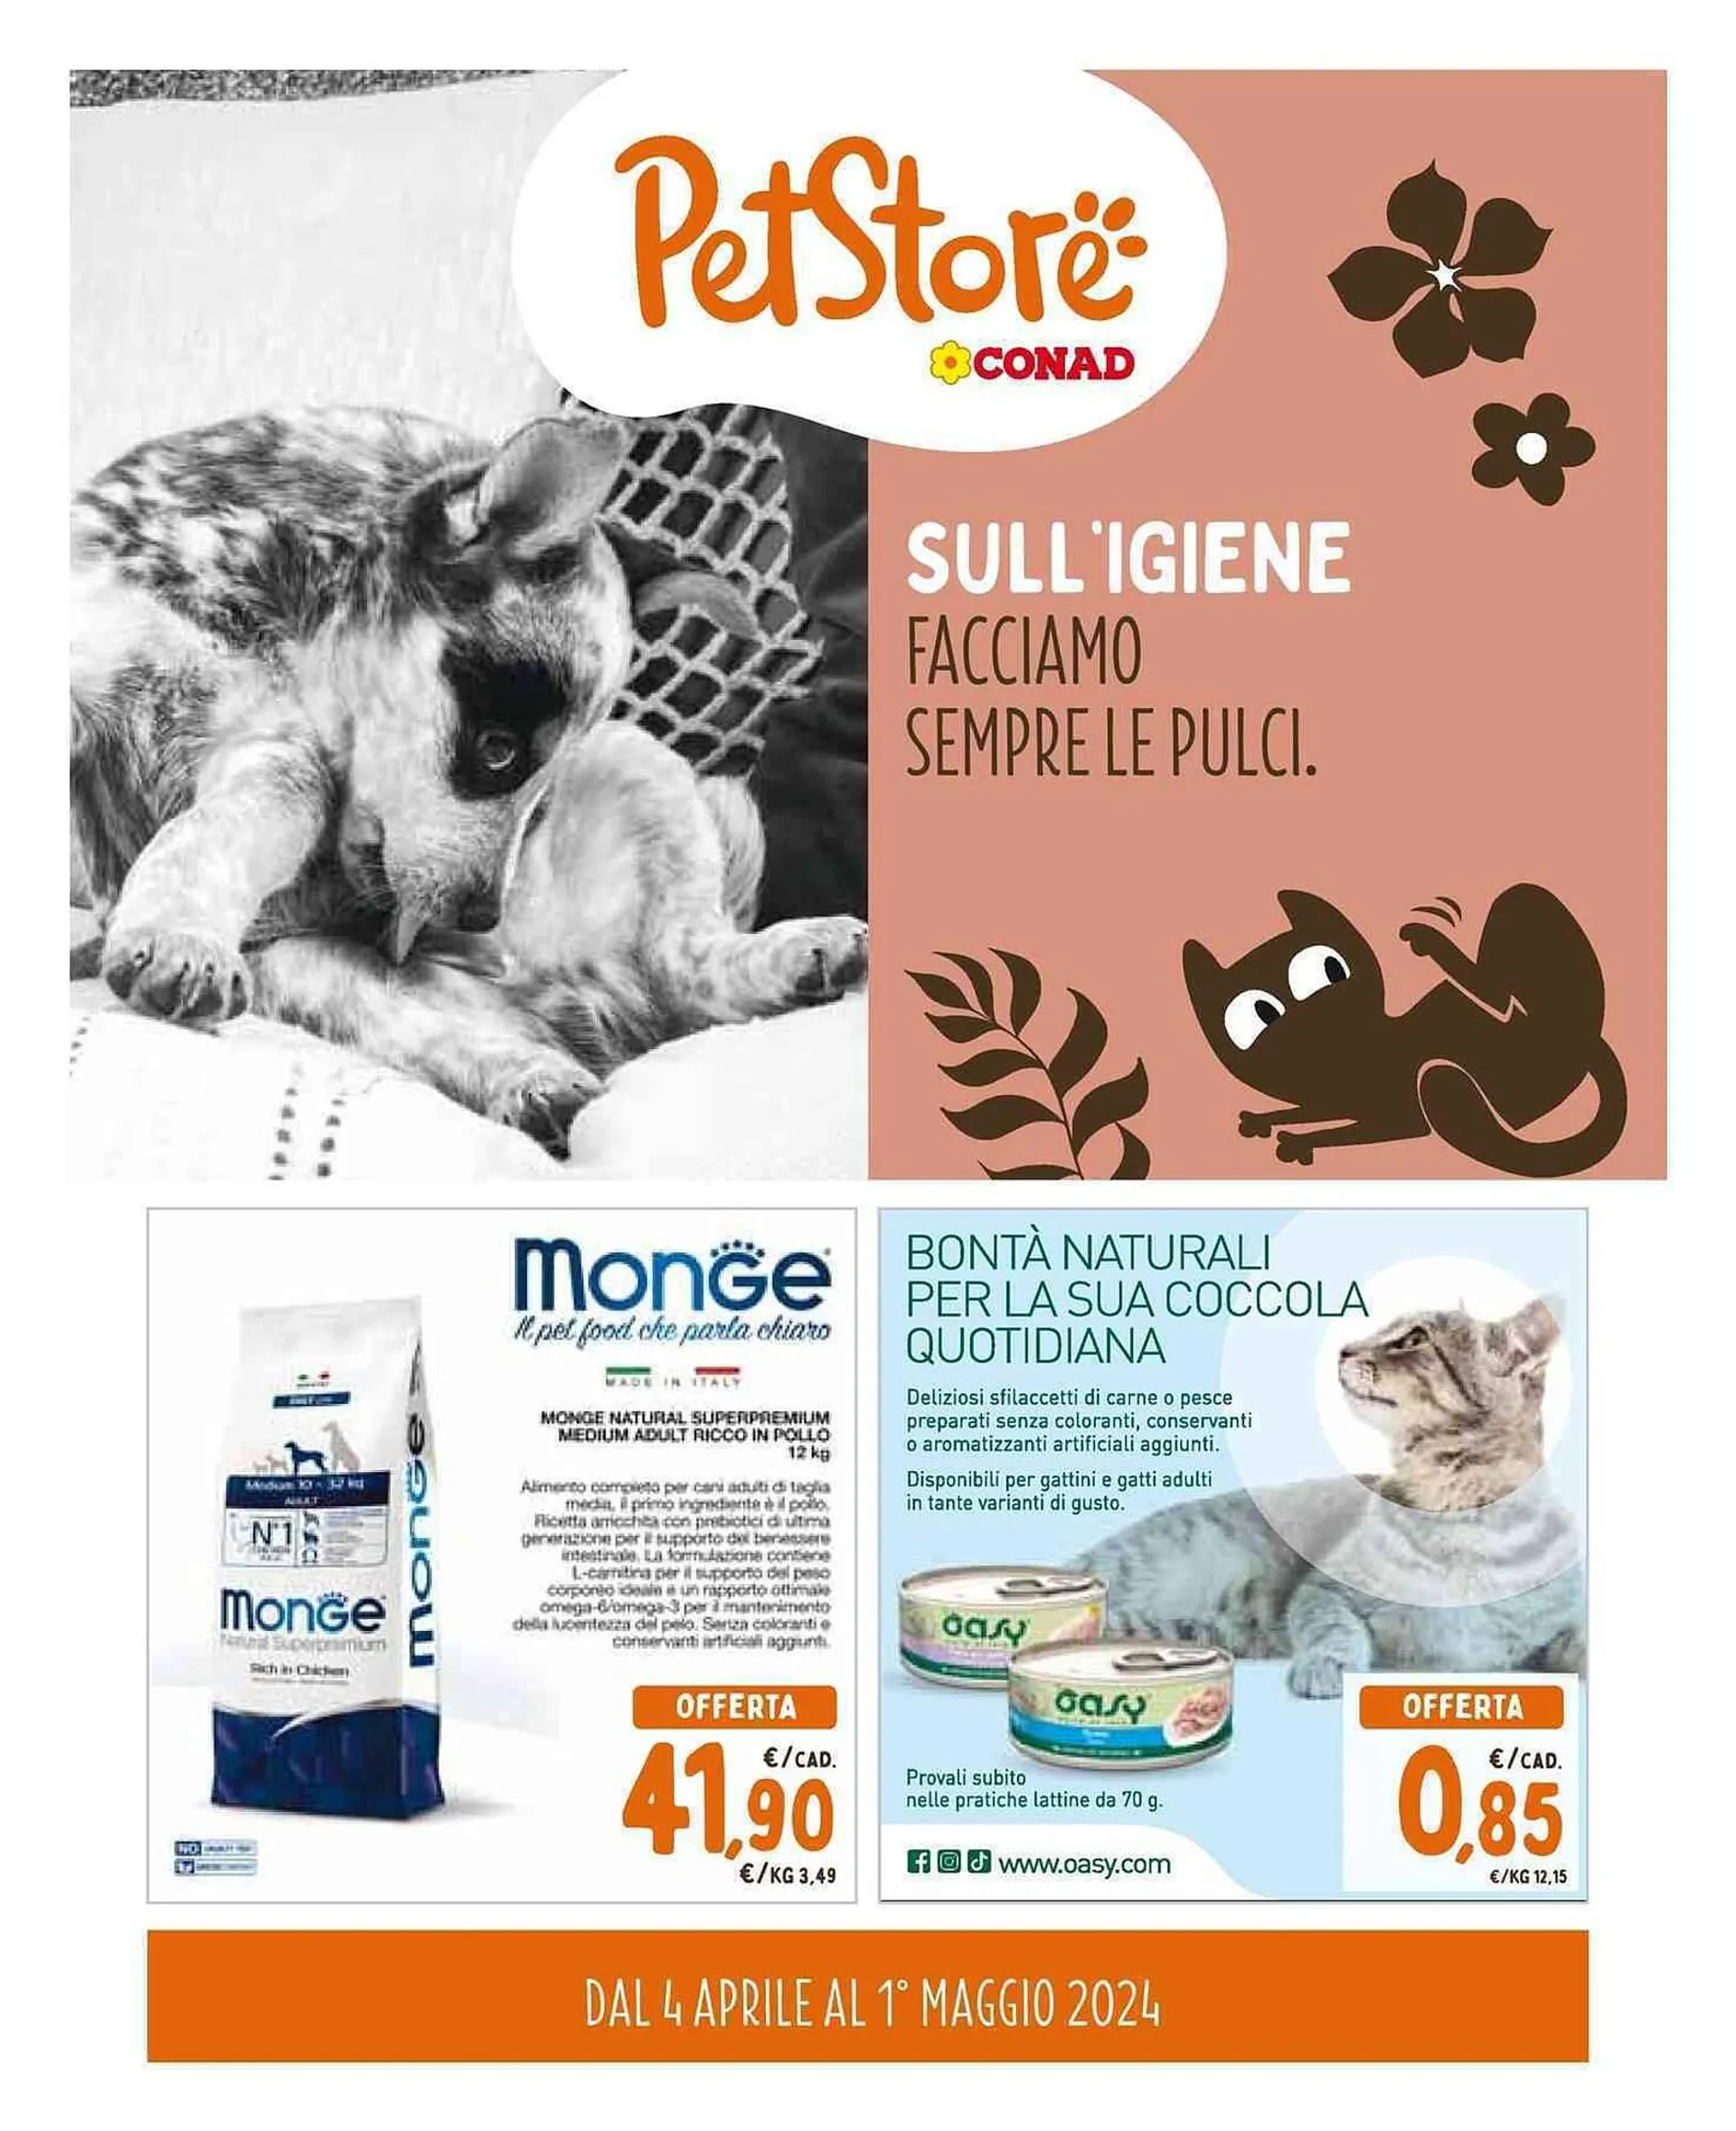 Volantino Pet Store Conad da 4 aprile a 1 maggio di 2024 - Pagina del volantino 1